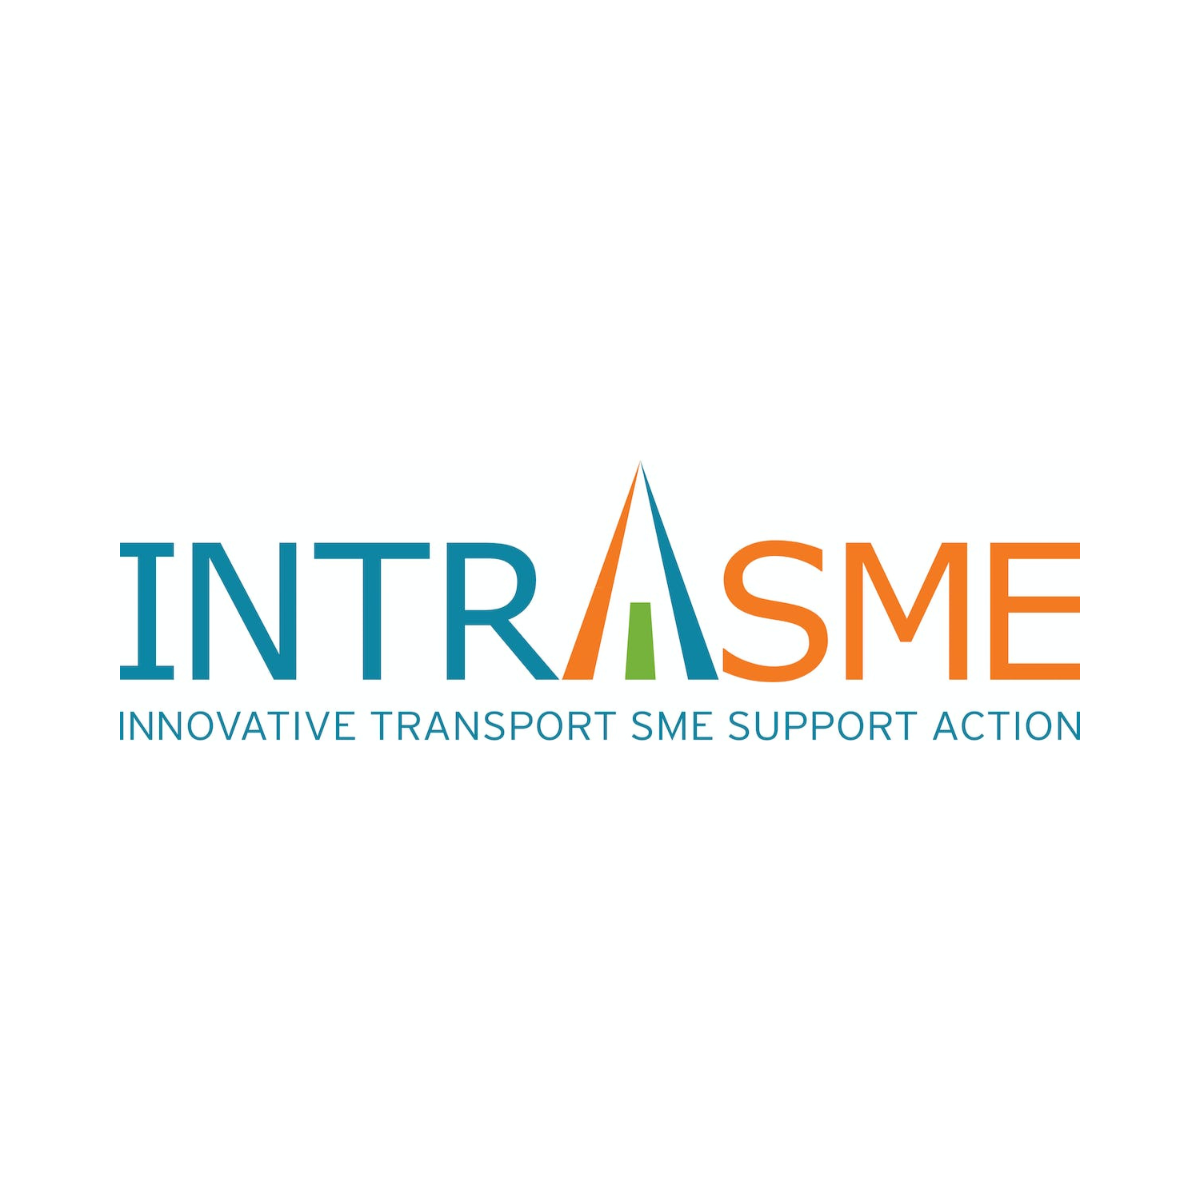 INTRASME – Innovative Transport SME Support Action